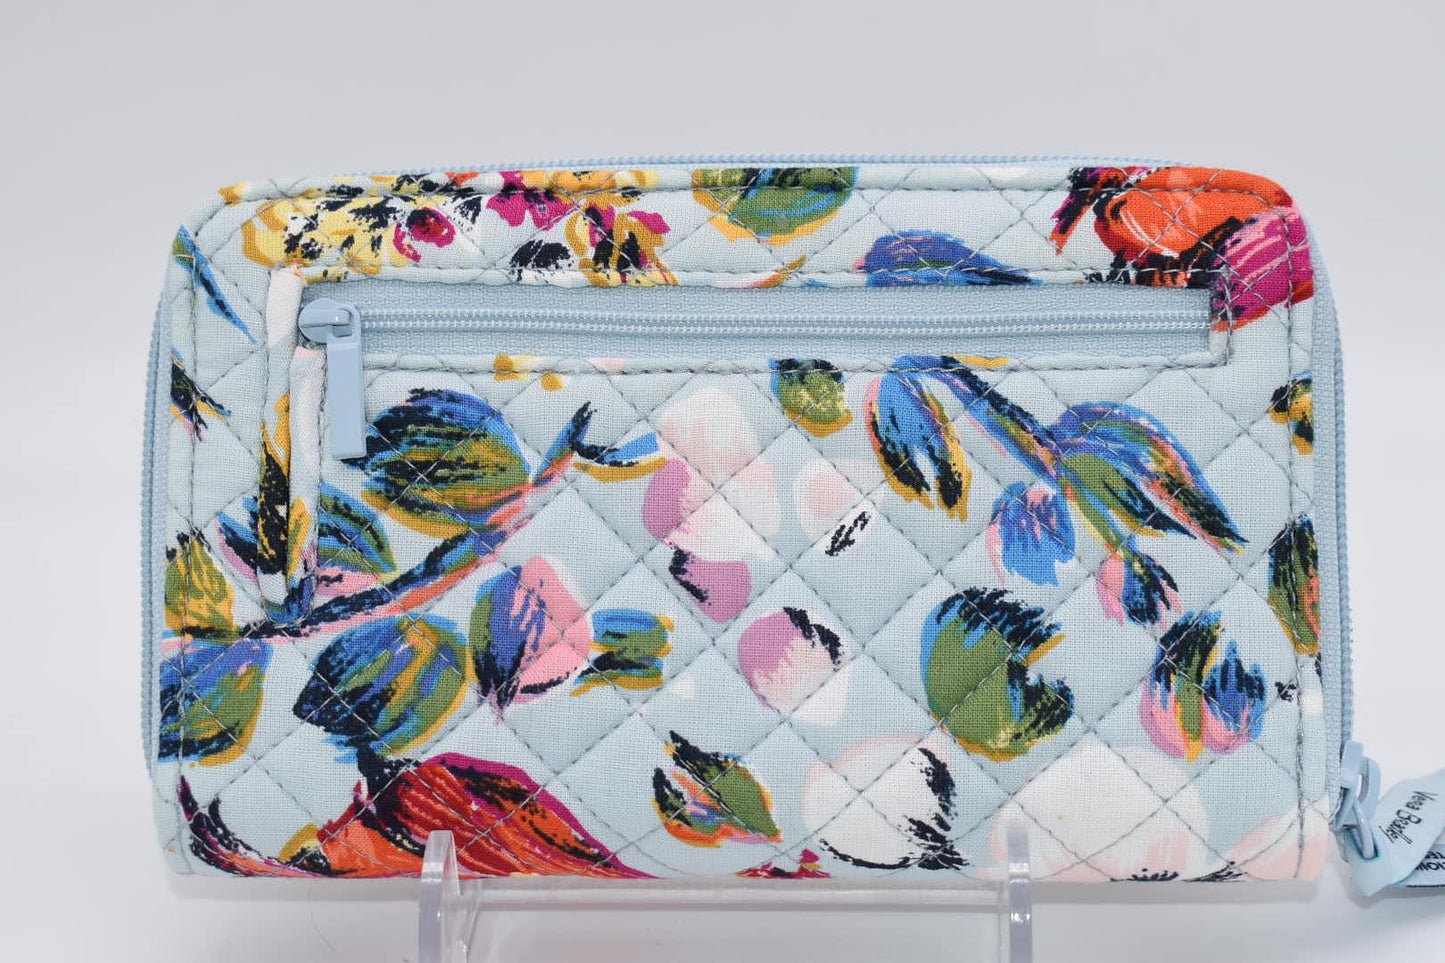 Vera Bradley RFID Turnlock Wallet in "Sea Air Floral" Pattern